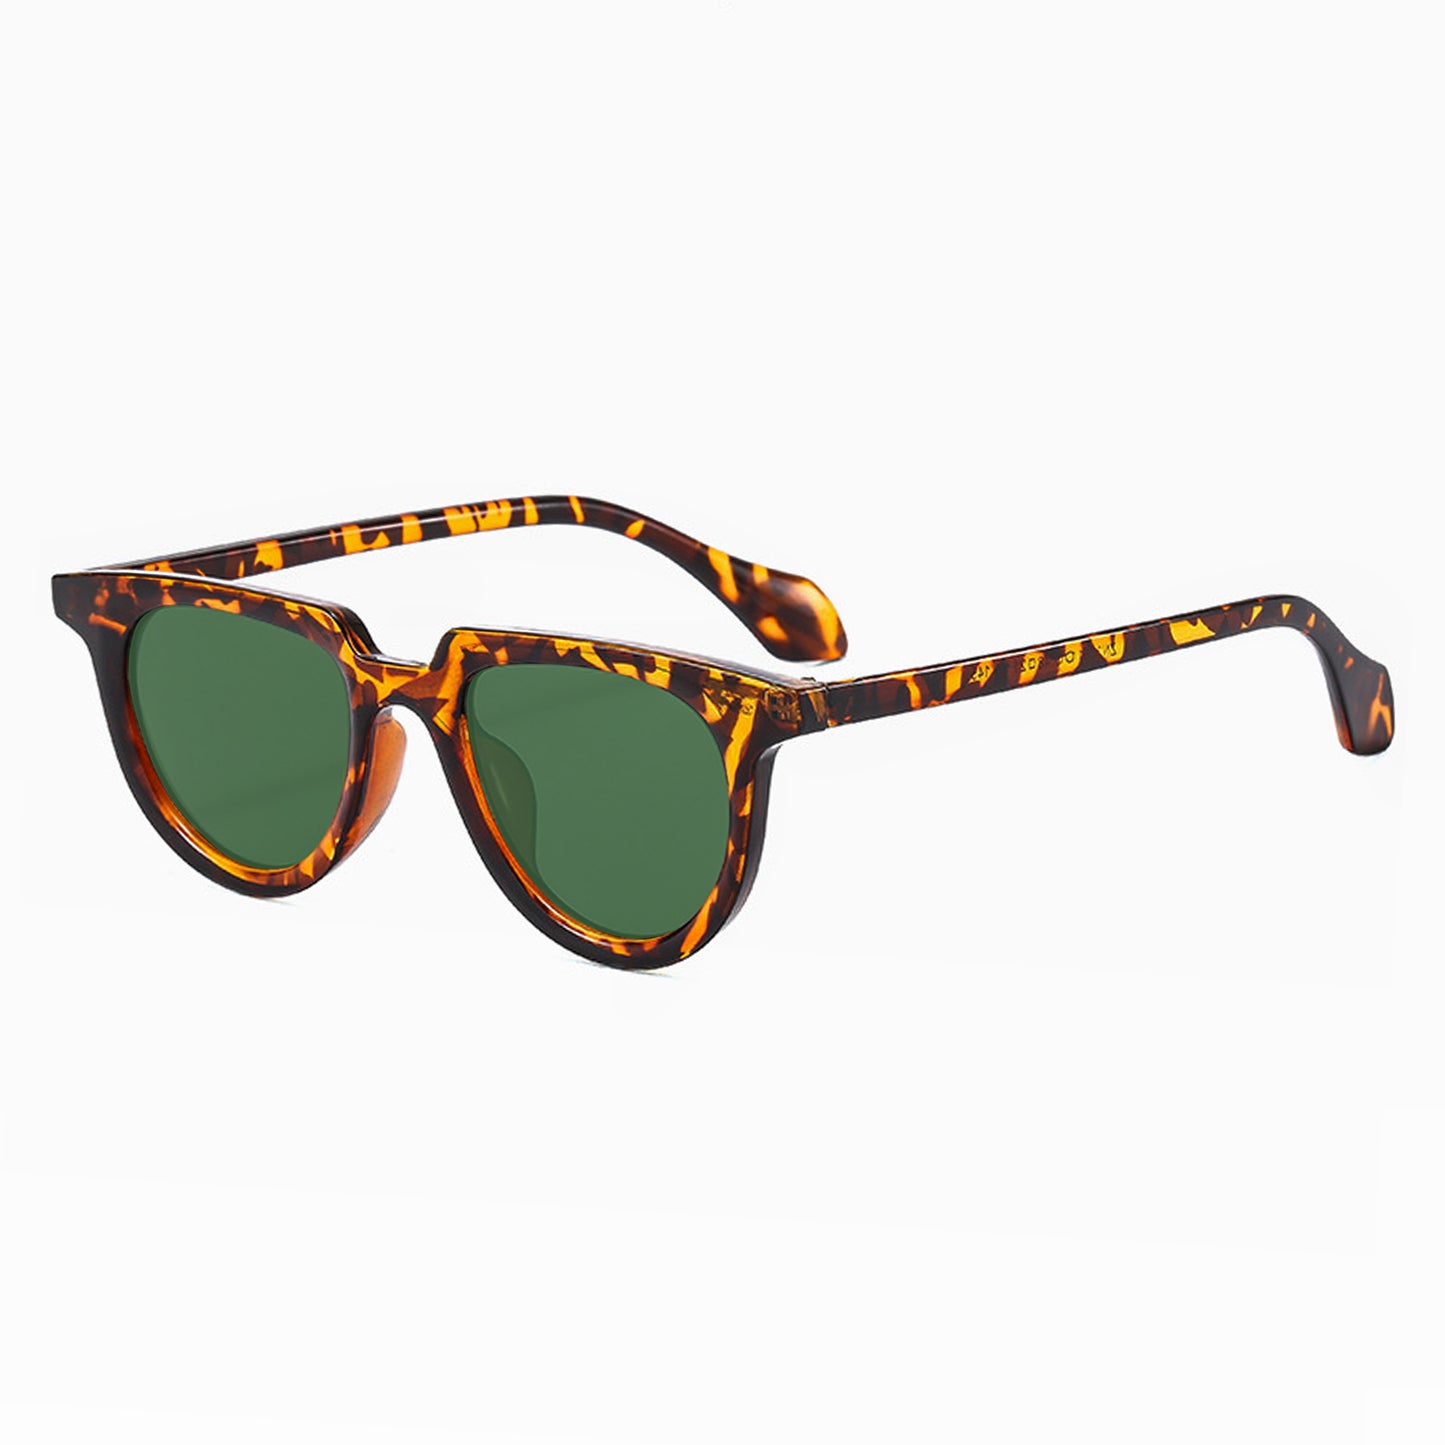 Lustler Exclusive Edition Unisex Sunglasses